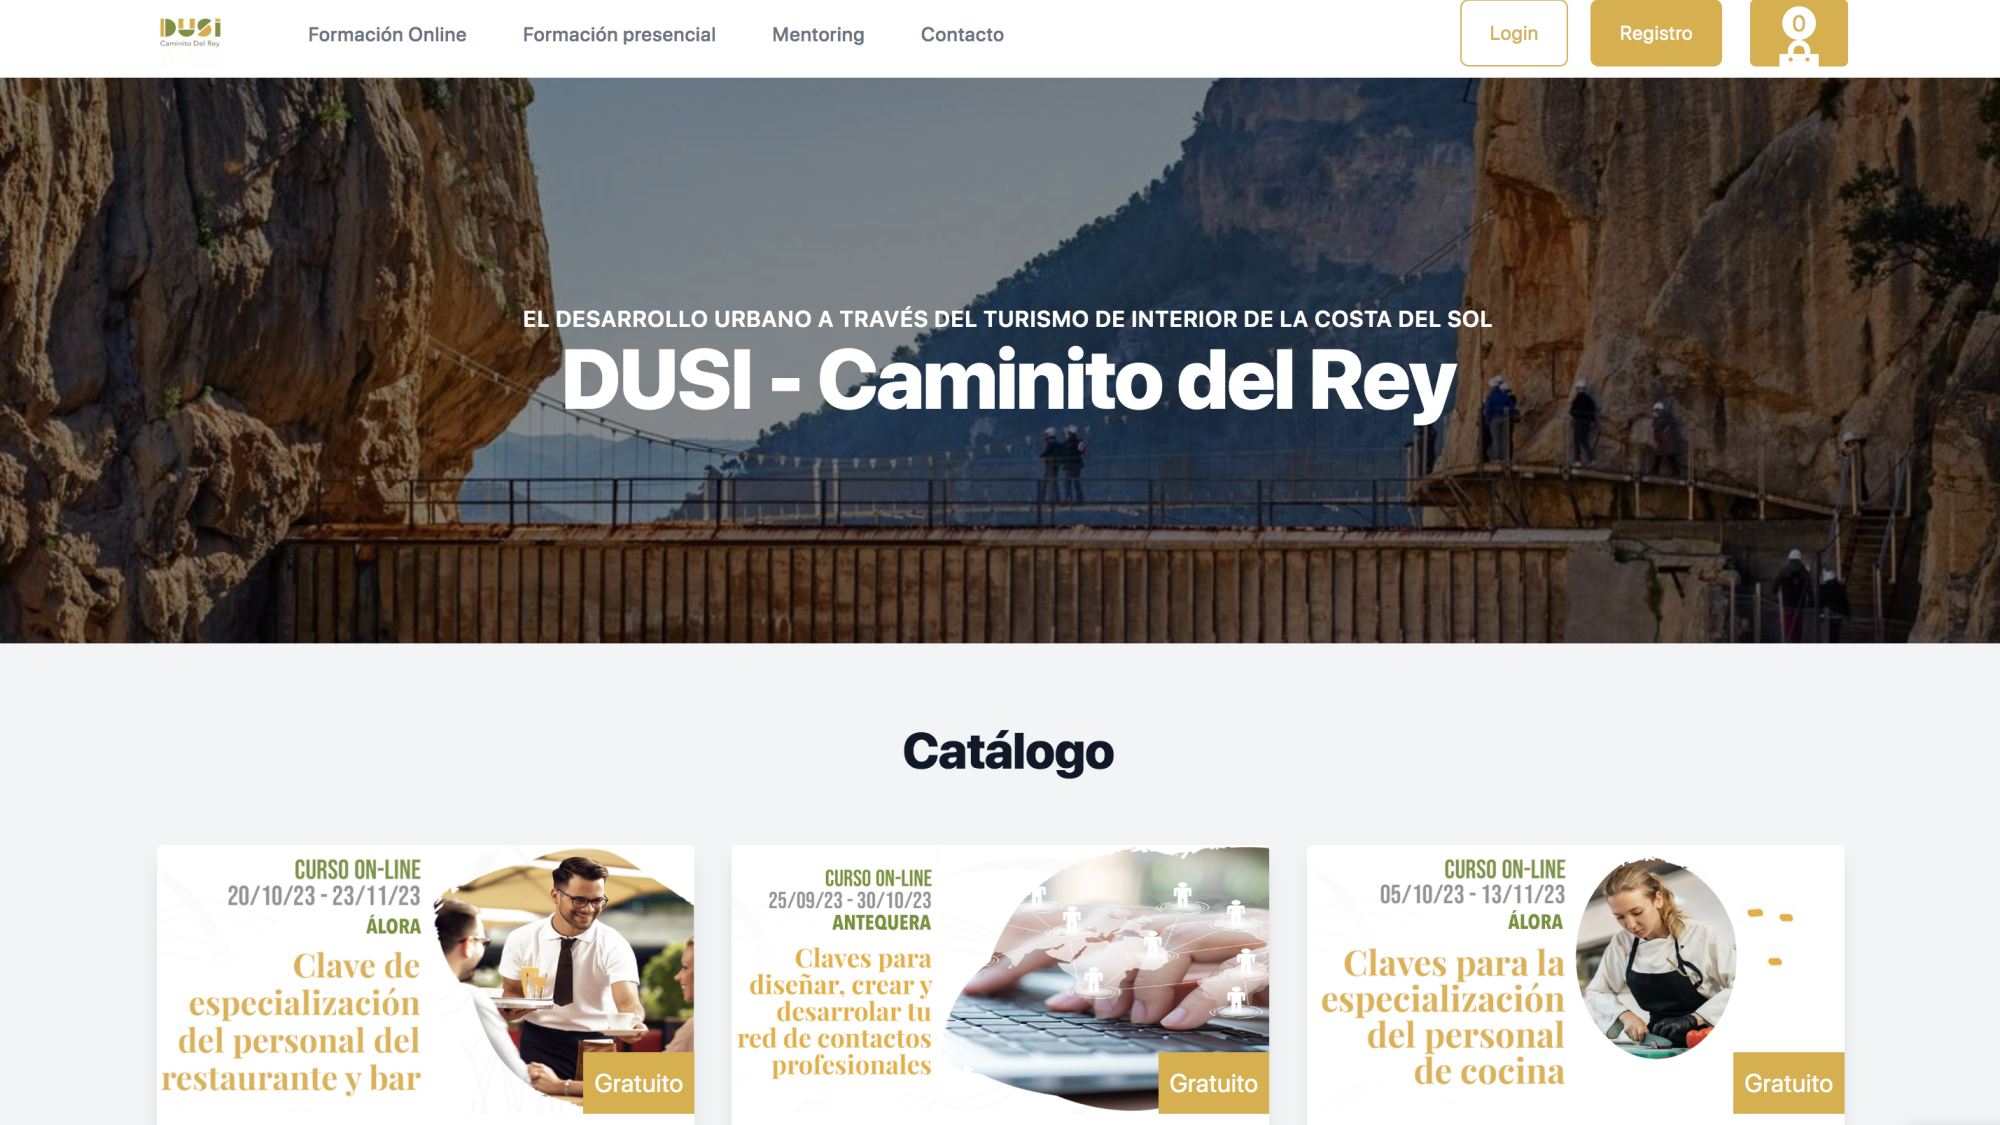 Página web con el catálogo de cursos de la Estrategia DUSI Caminito del Rey